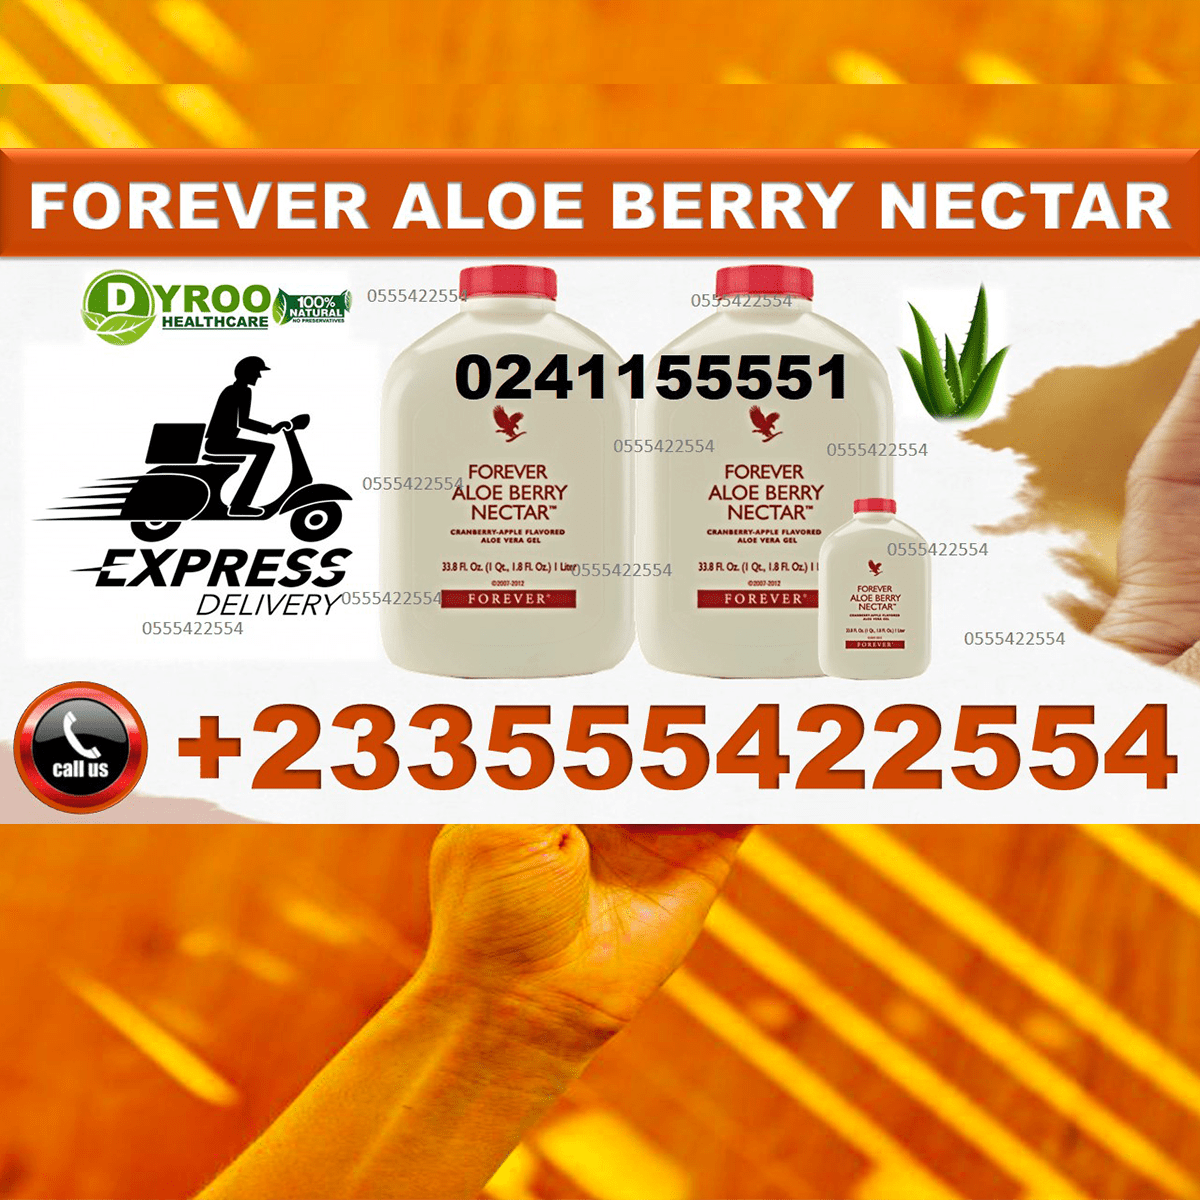 Price of Forever Living Berry Nectar in Ghana